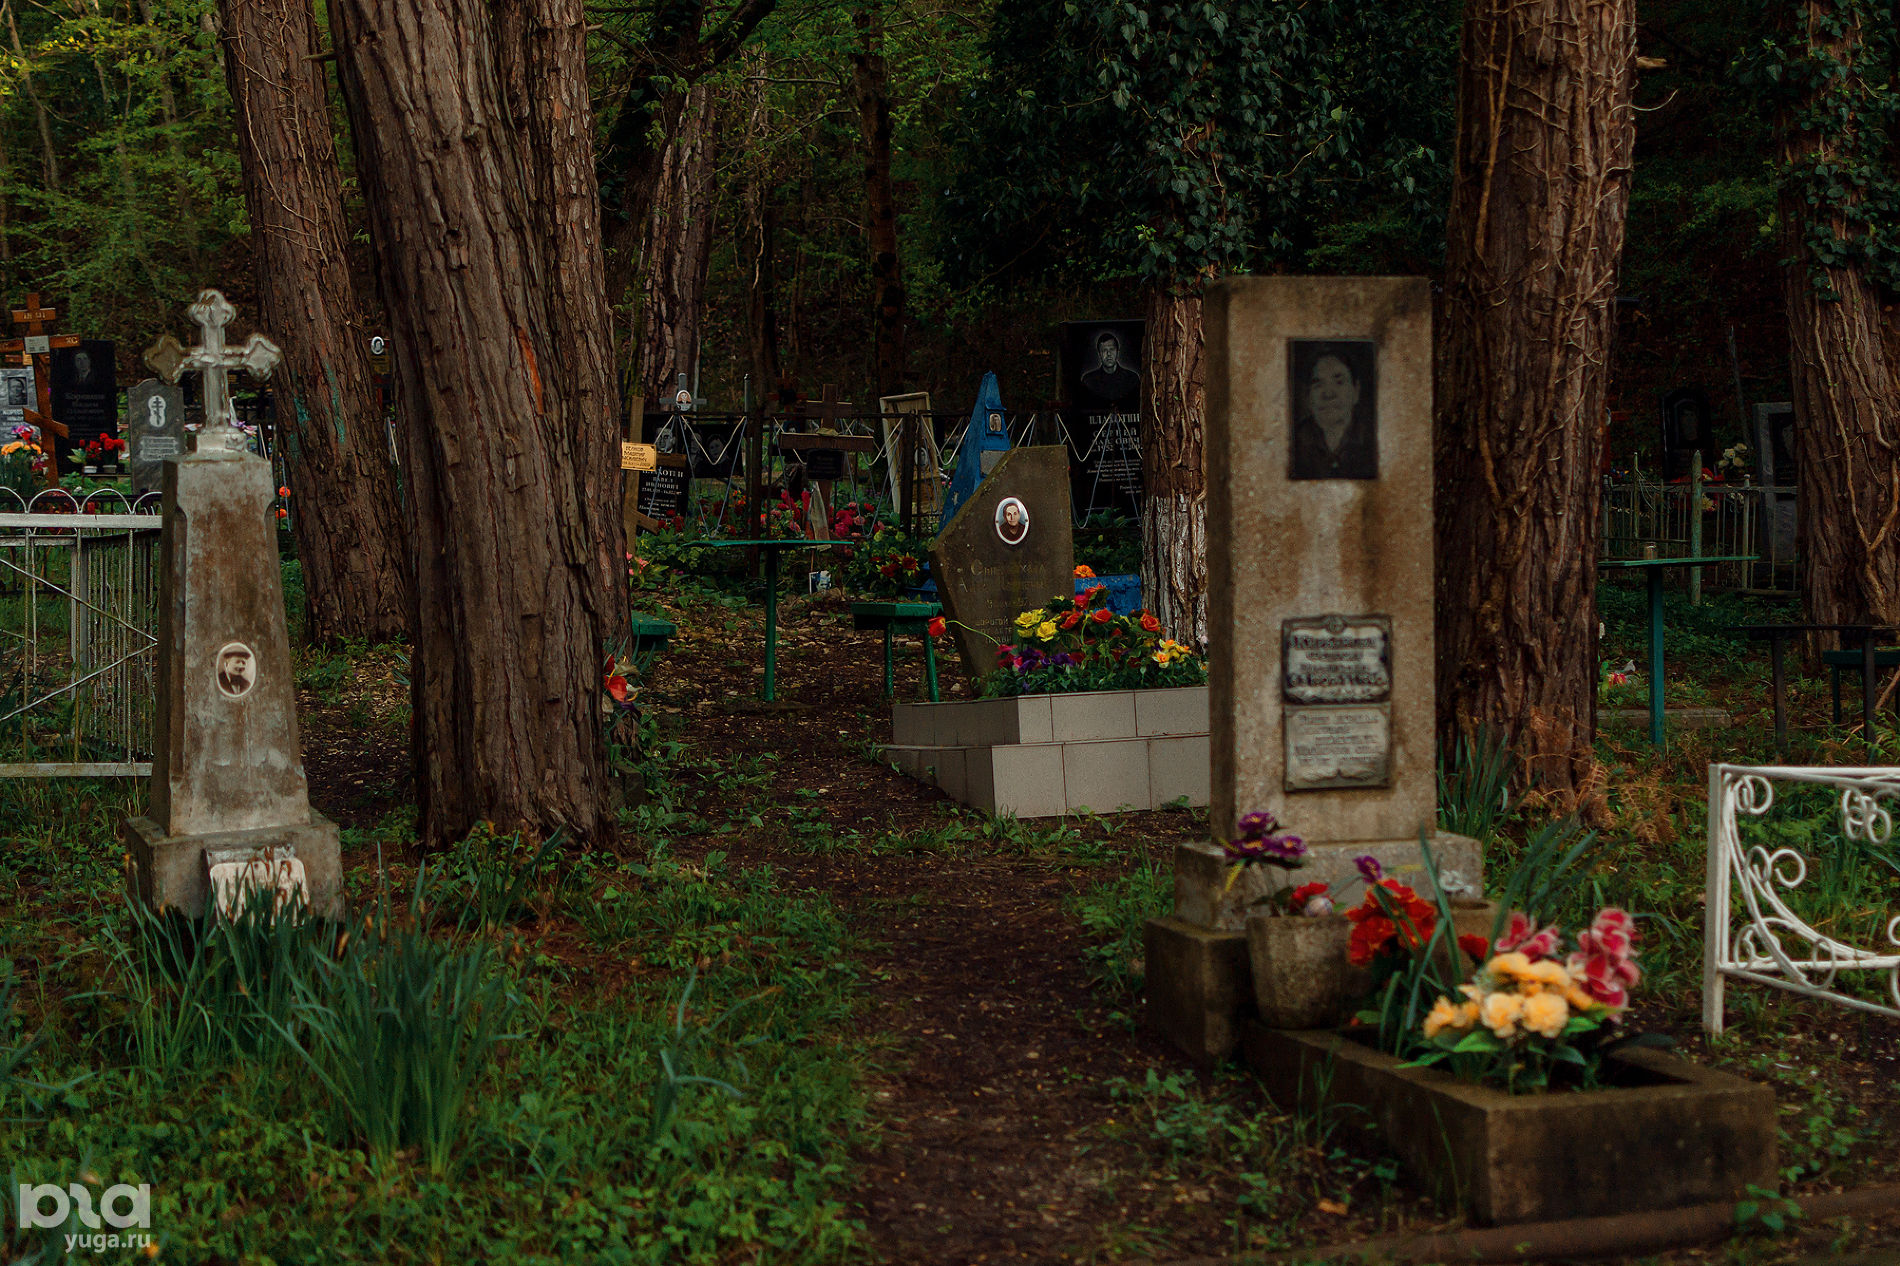 Джанхотское кладбище © Фото Юли Шафаростовой, Юга.ру